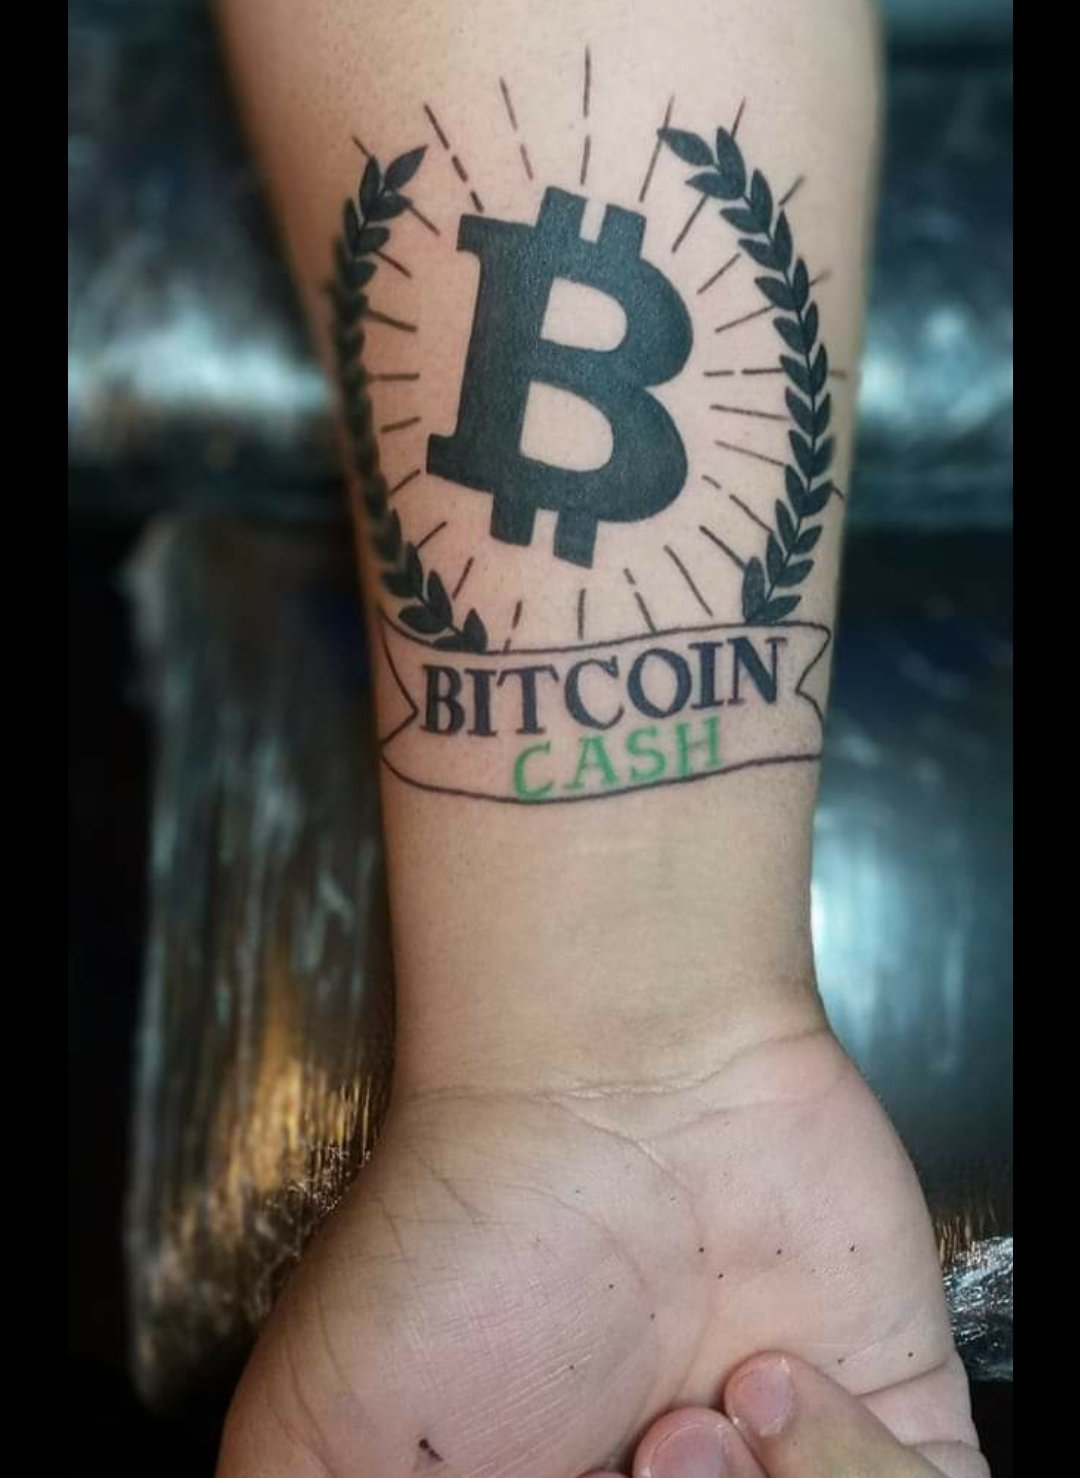 Got My BCH Bitcoin Cash Tattoo!